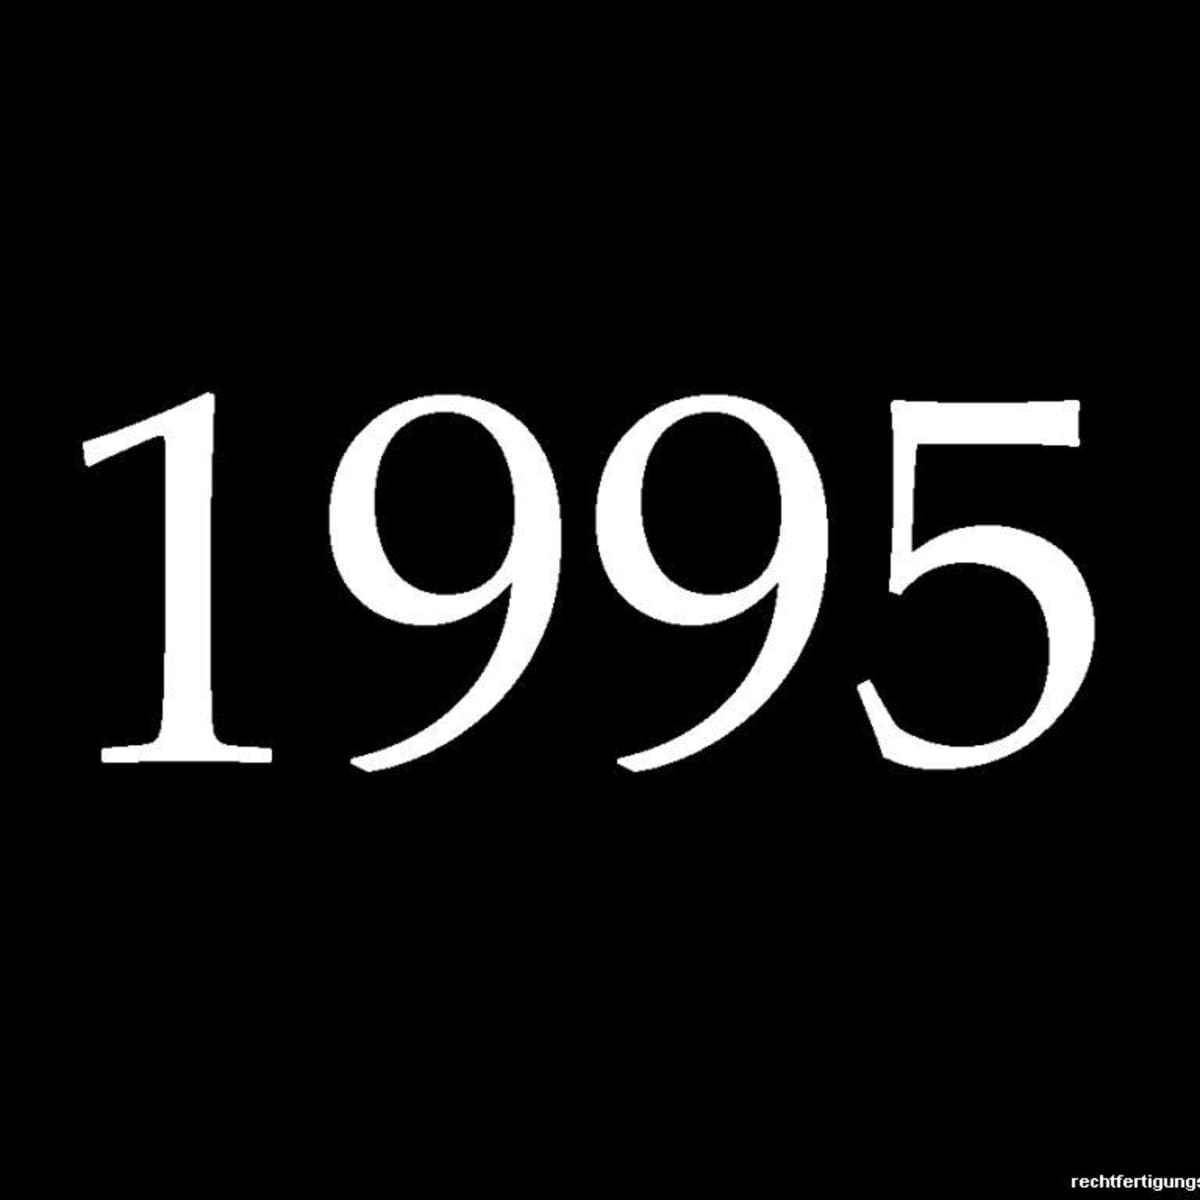 Year 1995 Fun Facts, Trivia, and History - HobbyLark